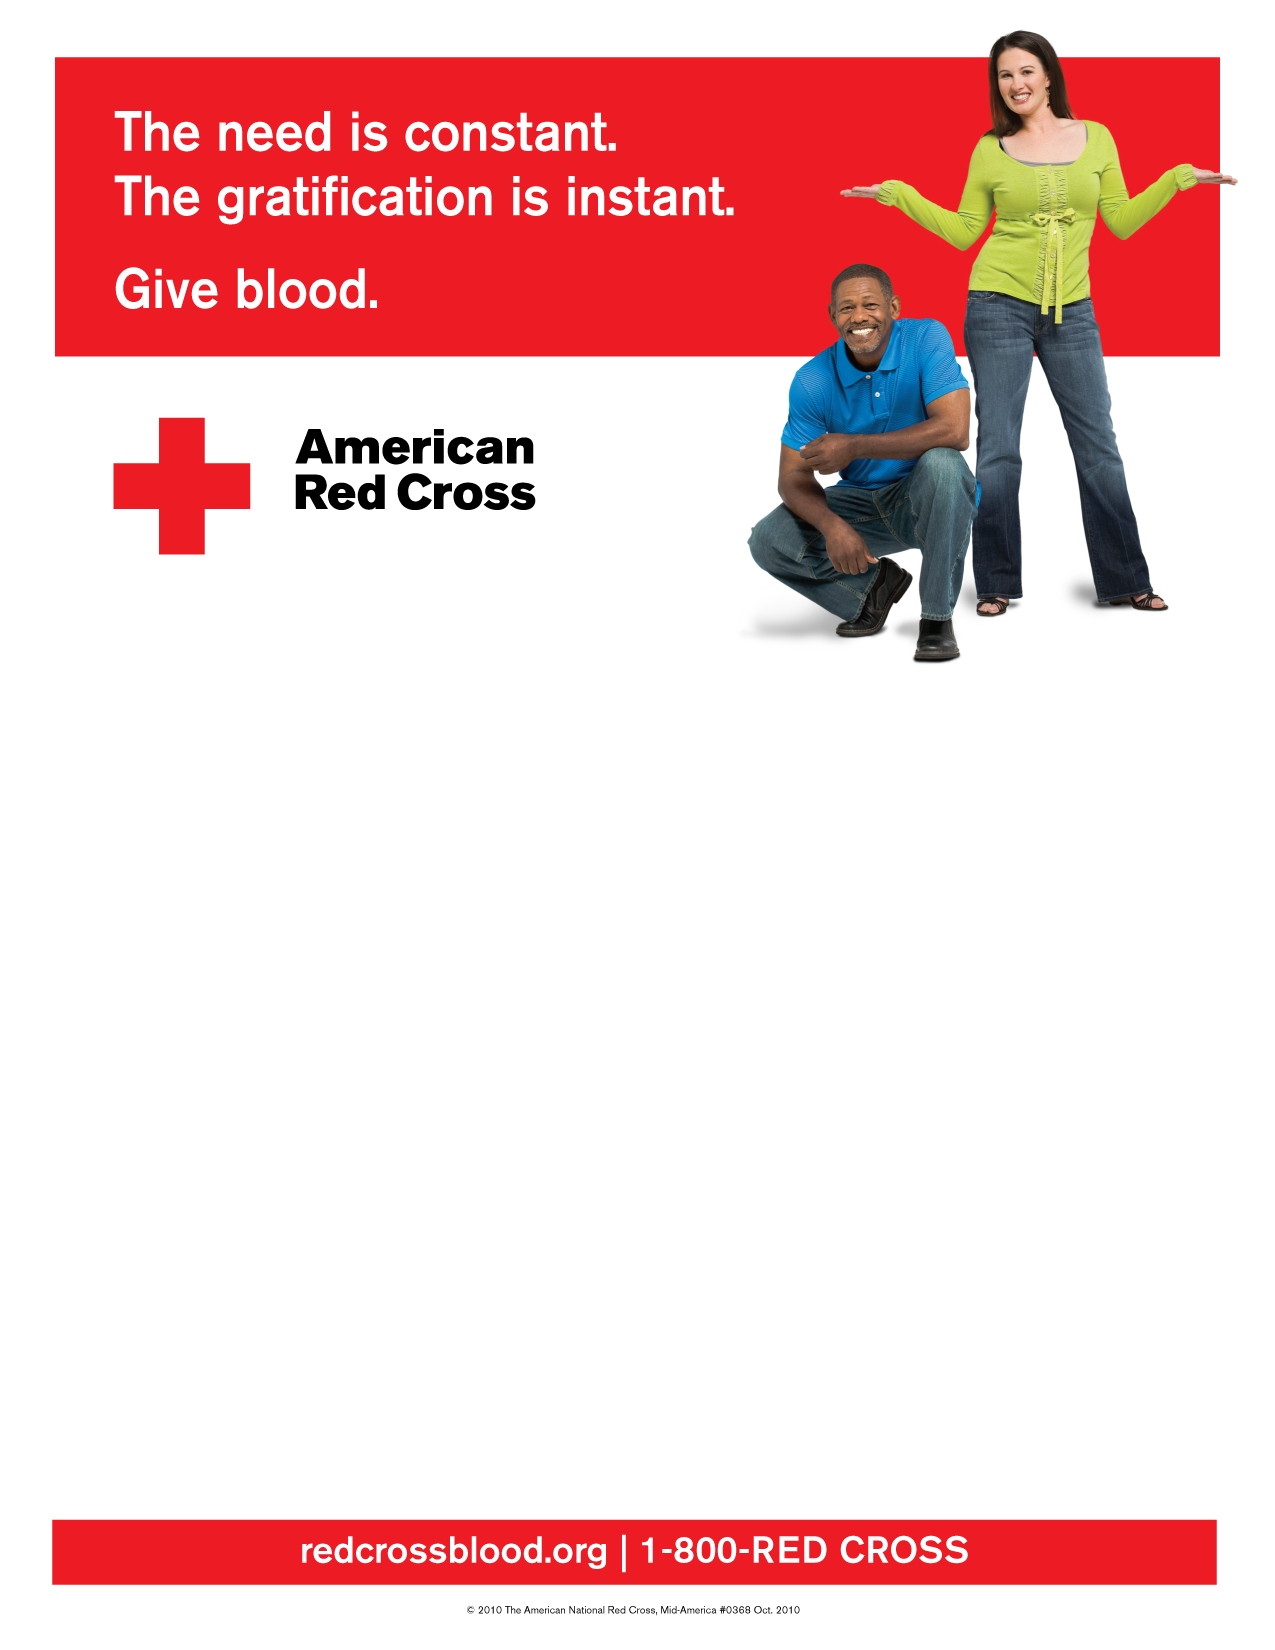 Red Cross Logo